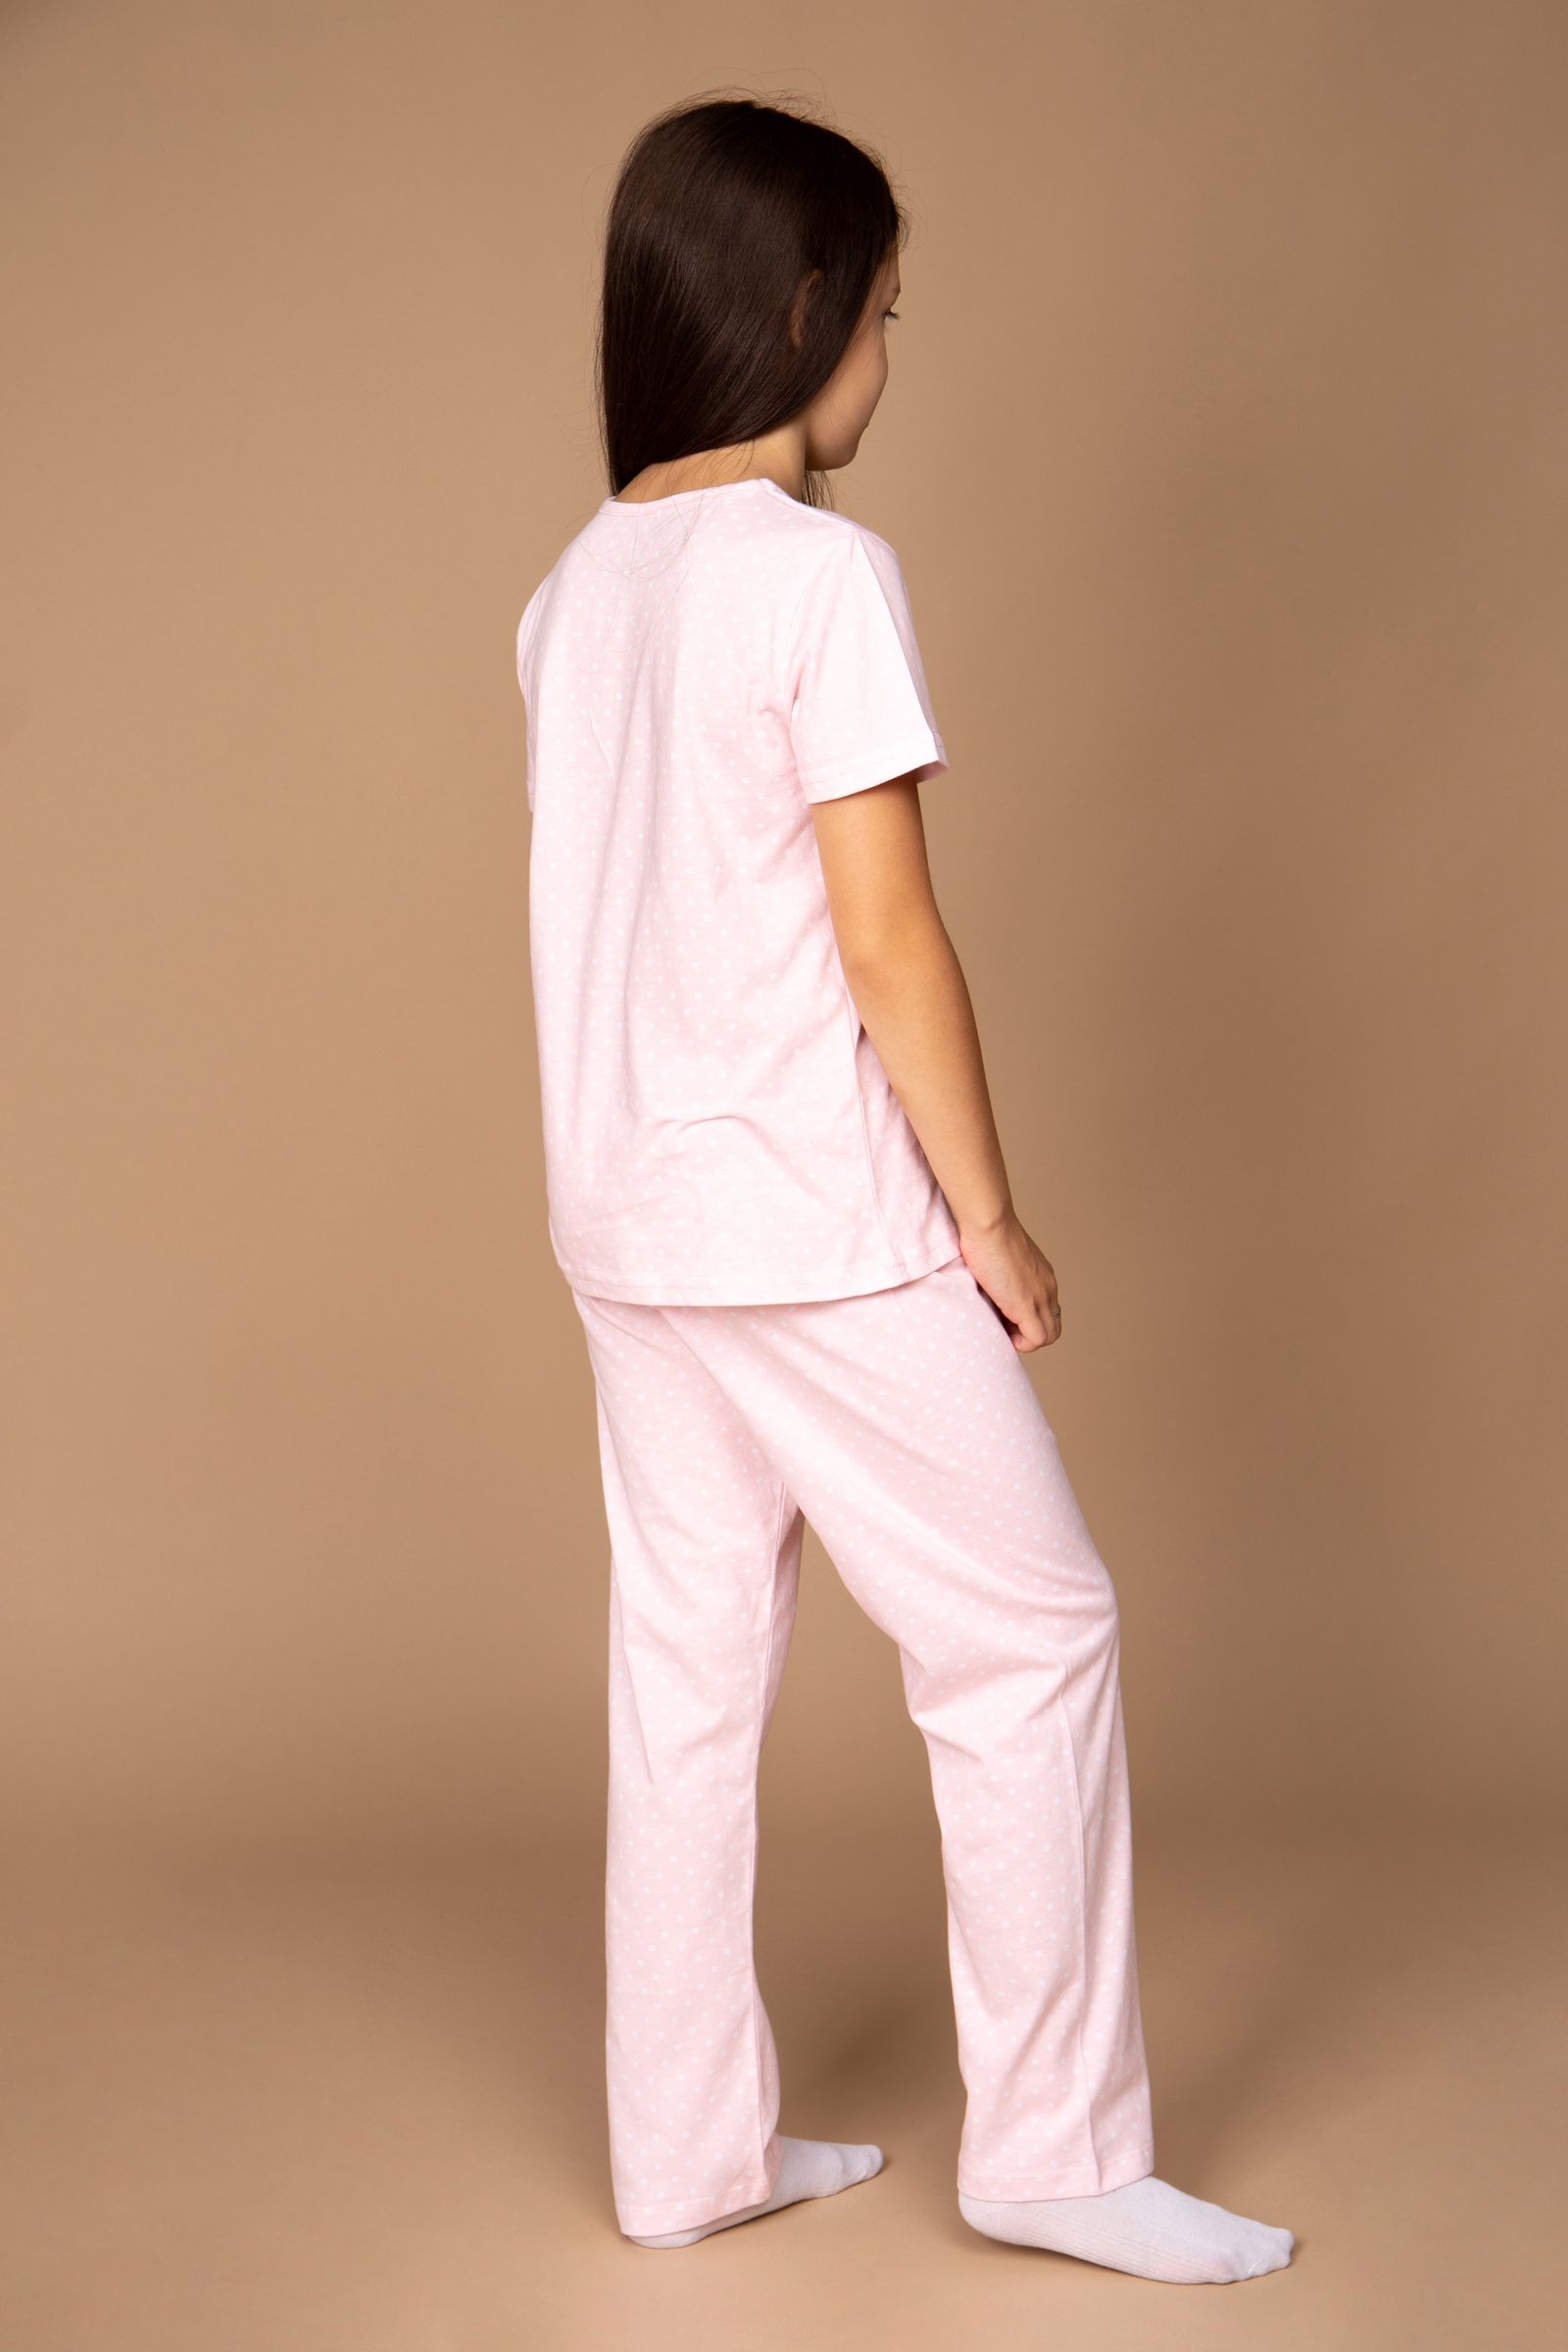 Пижама-ПЖ02-4254 оптом от производителя детской одежды 'Алёна'